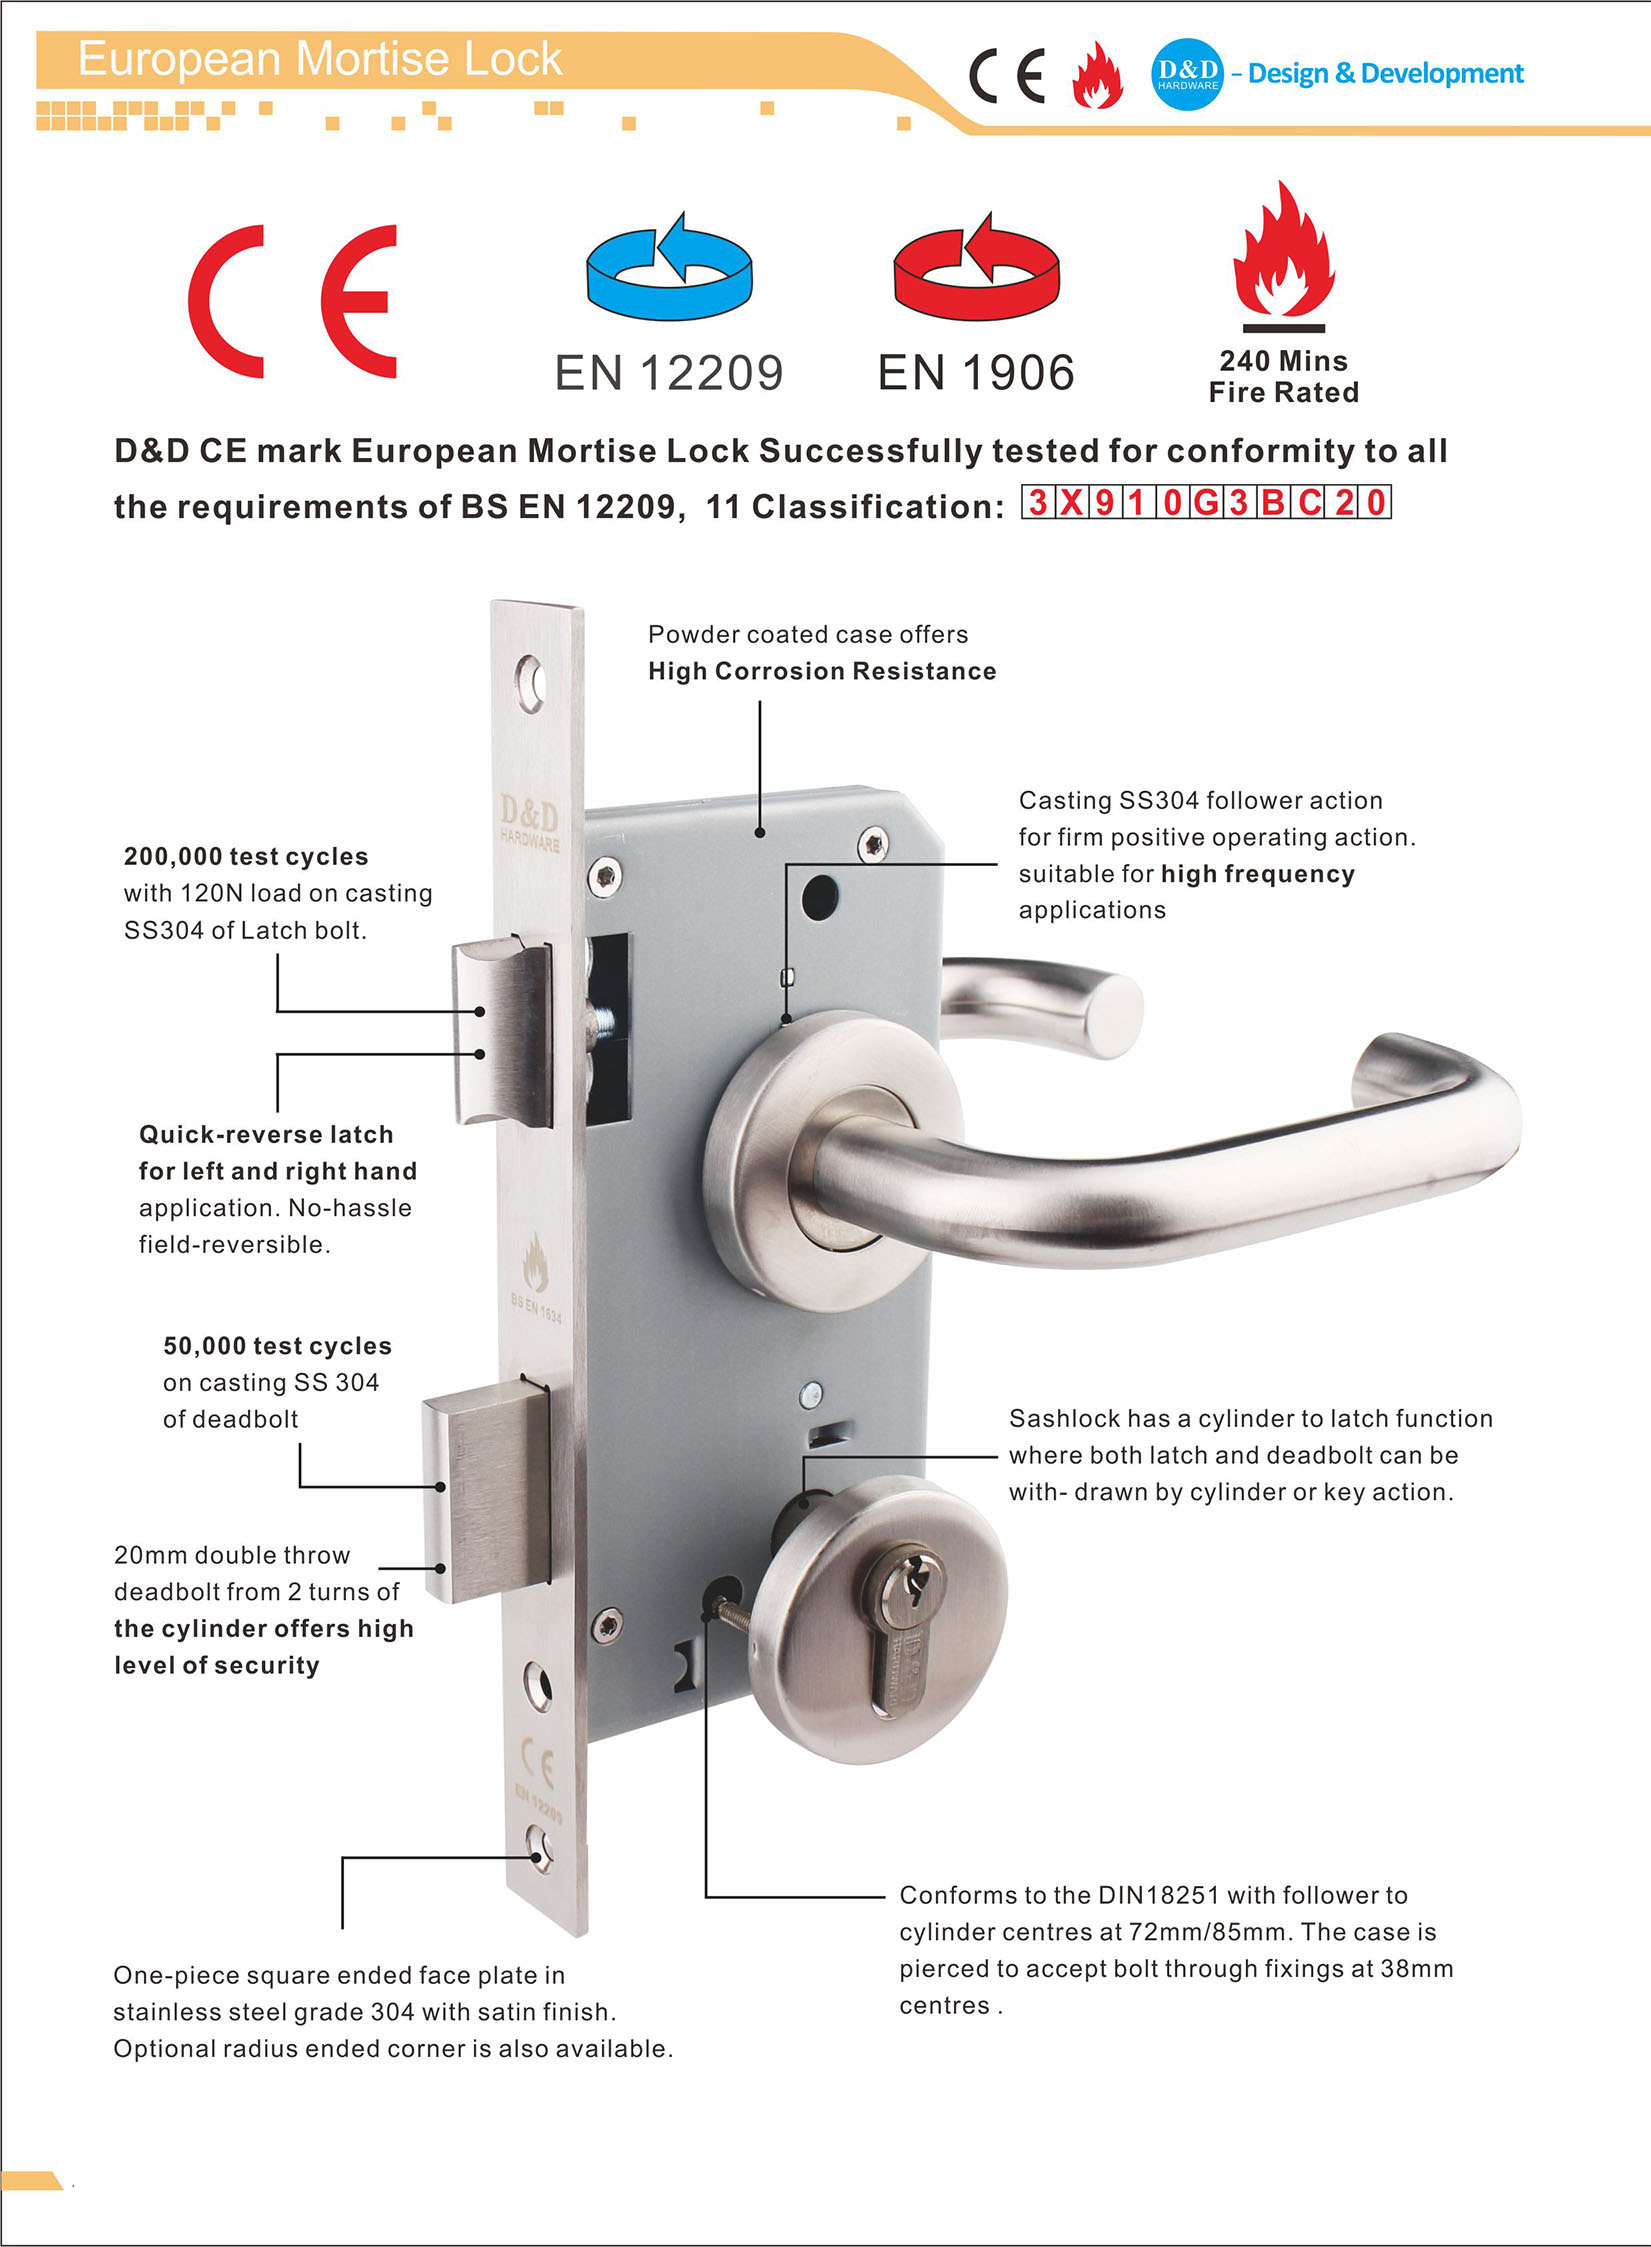 SUS304 New Design Double Hook Lock for Sliding Door-DDML031-B